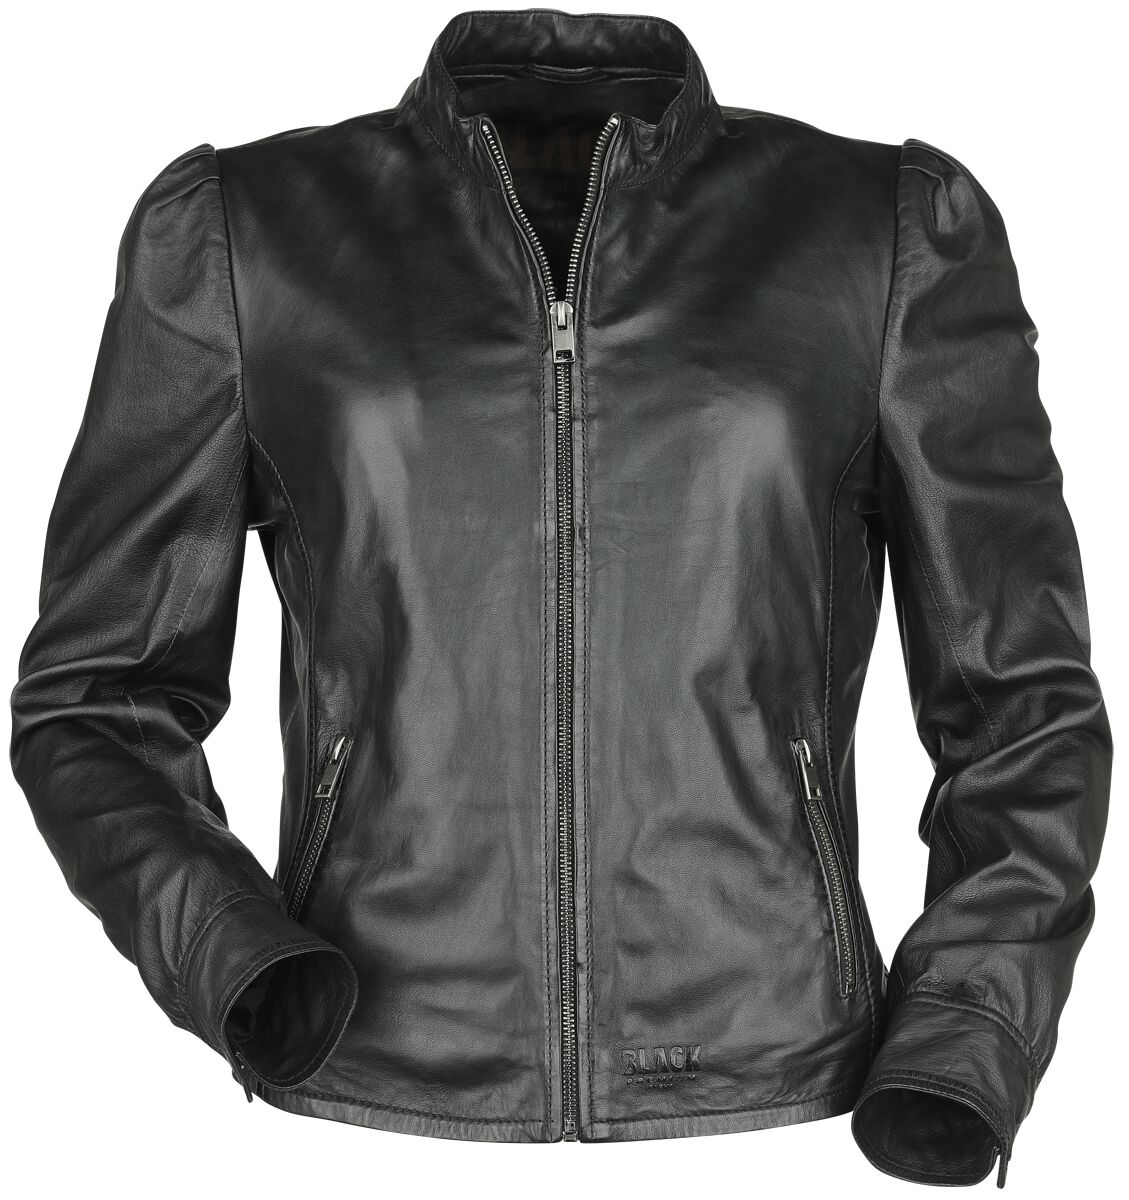 Black Premium by EMP - Puff Sleeve Leather Jacket - Lederjacke - schwarz - EMP Exklusiv!